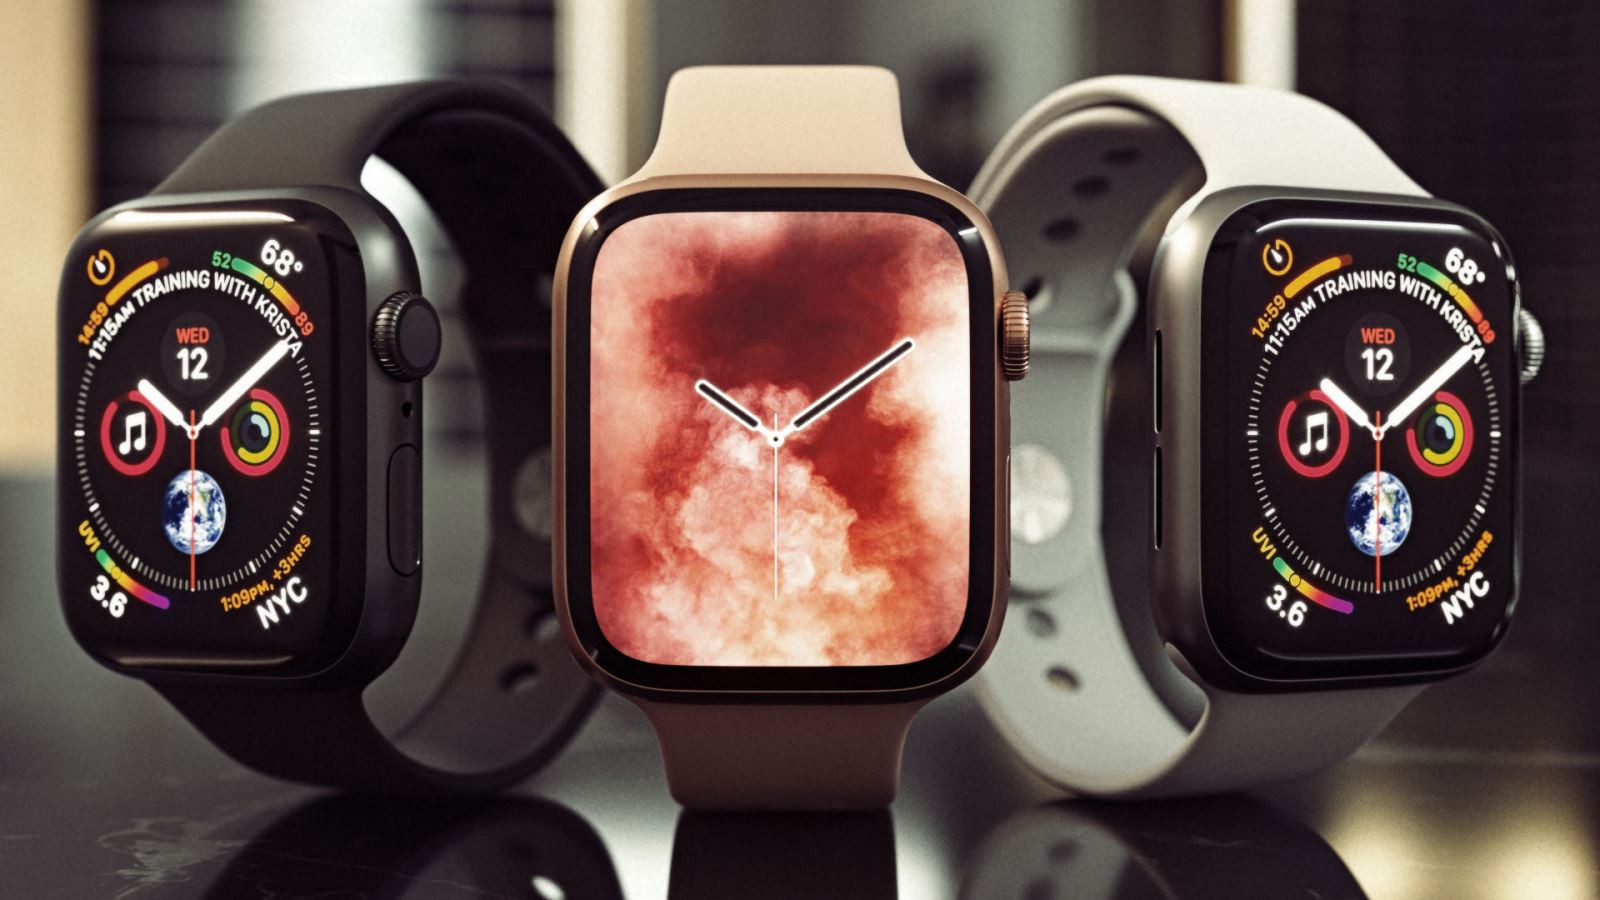 Tổng hợp thông tin Apple Watch SE – mẫu đồng hồ thông minh giá rẻ sắp ra mắt của Apple 4